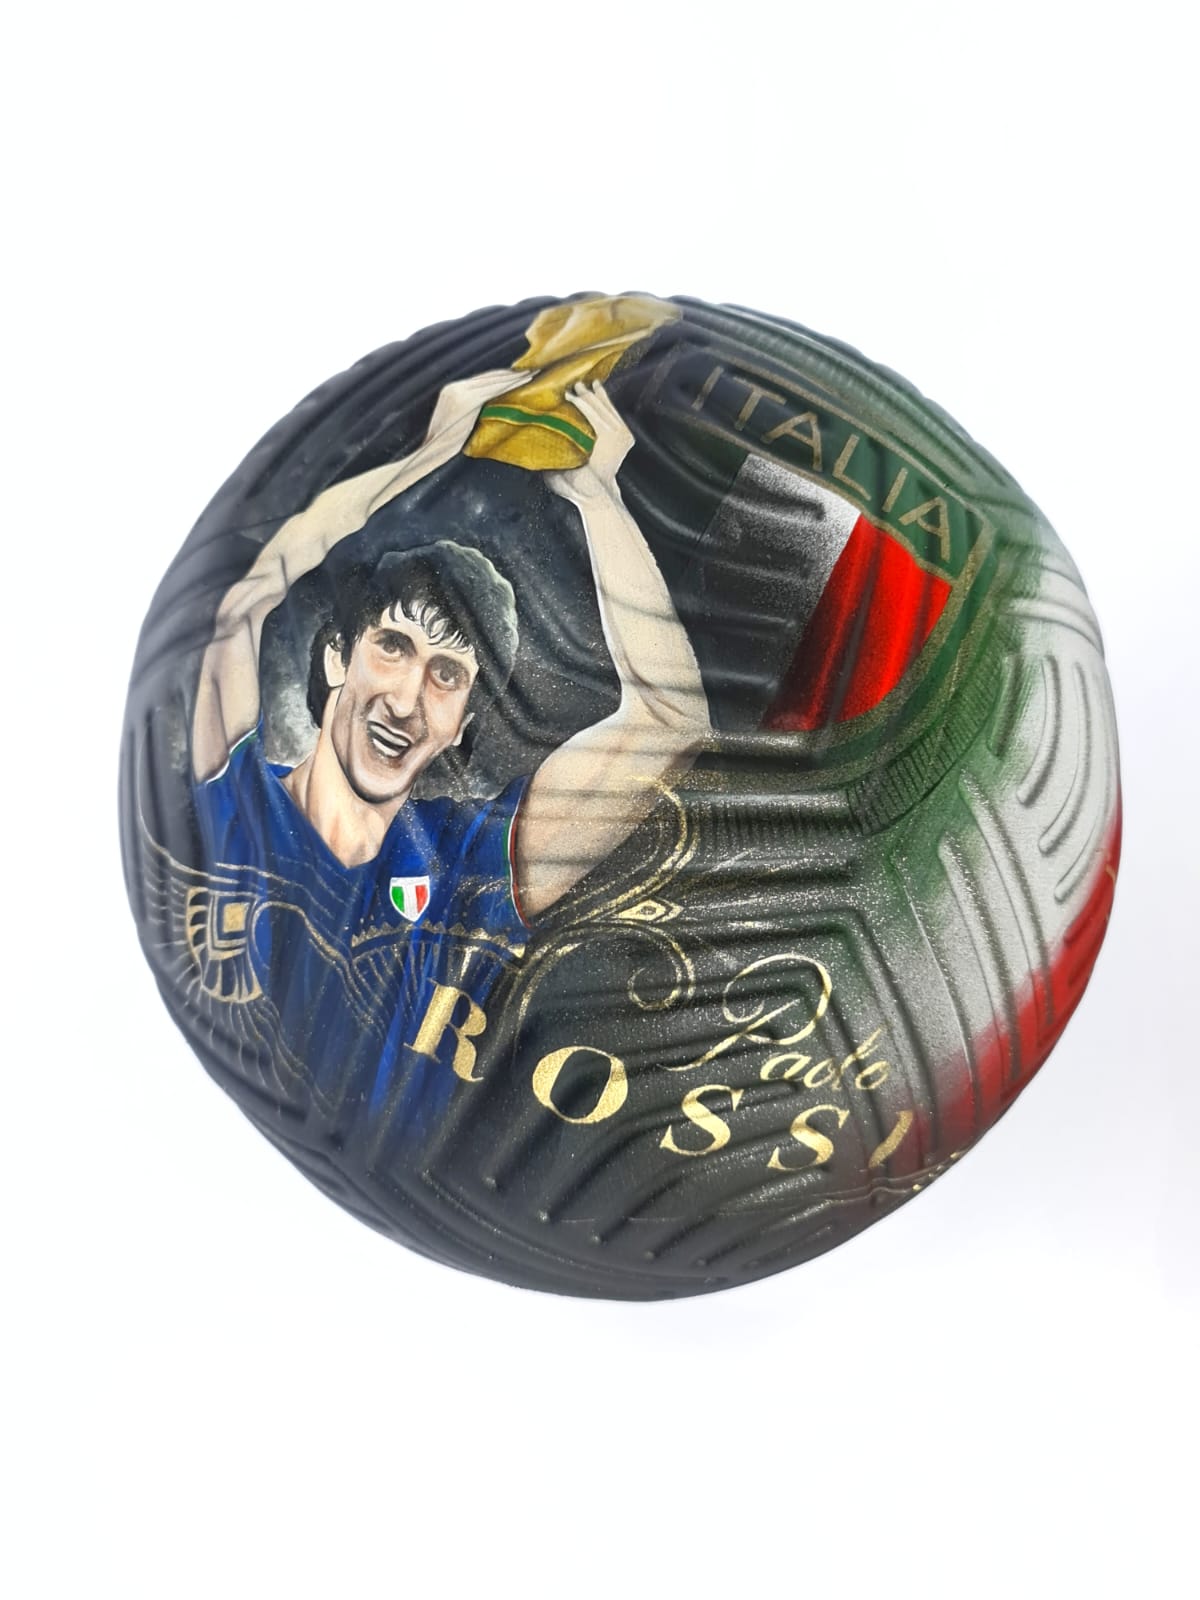 Rostro de Paolo Rossi plasmado en el balón